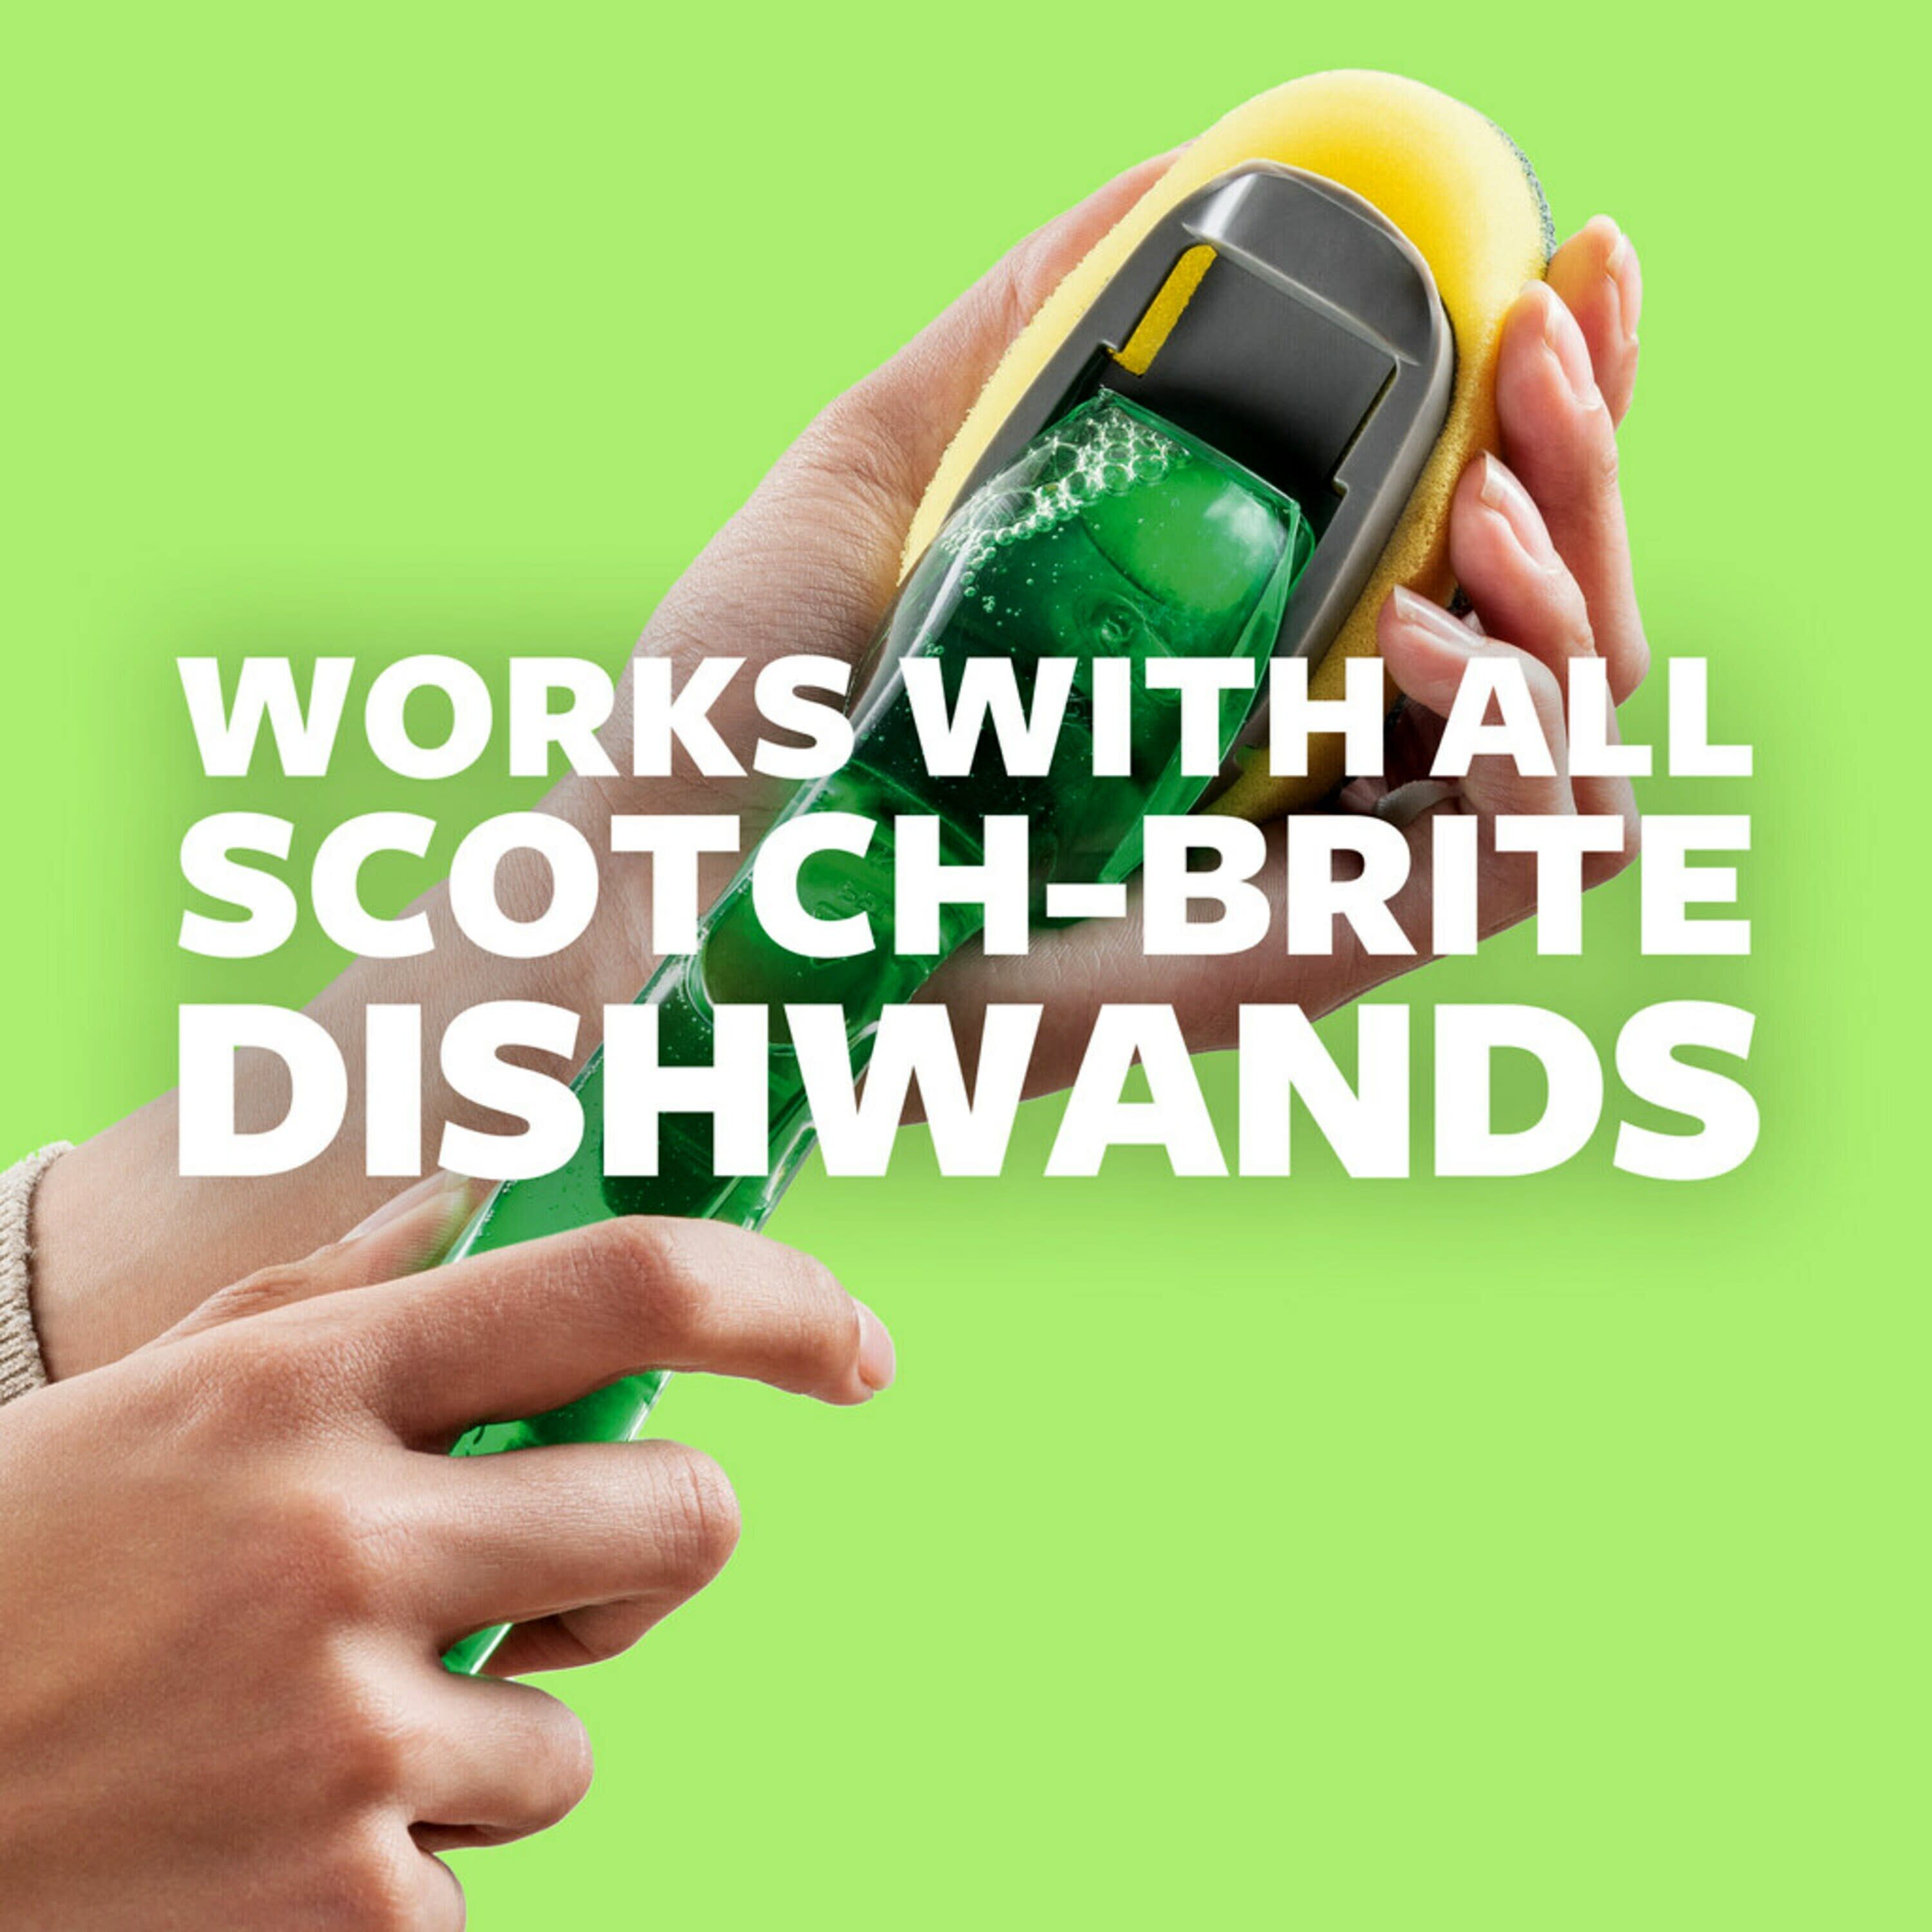 Scotch-Brite Little Handy Scrubber Poly Fiber Dish Brush in the